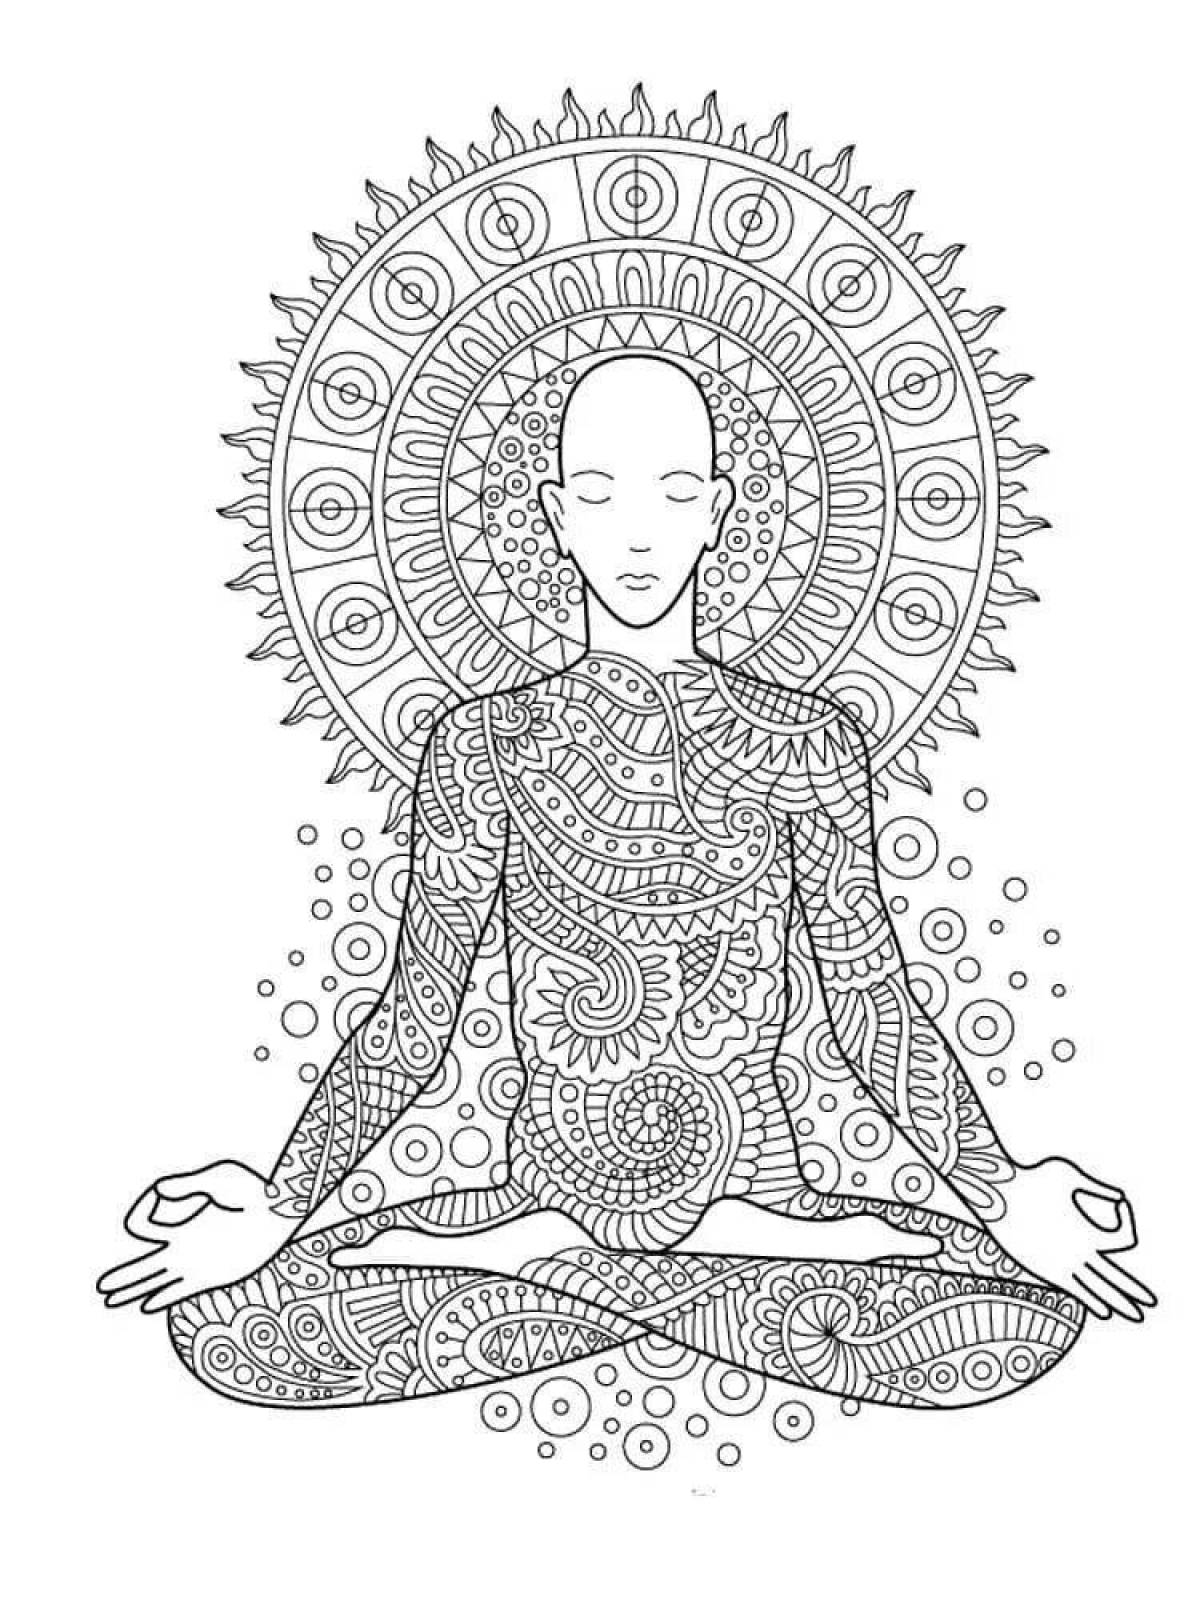 Soul coloring for meditation